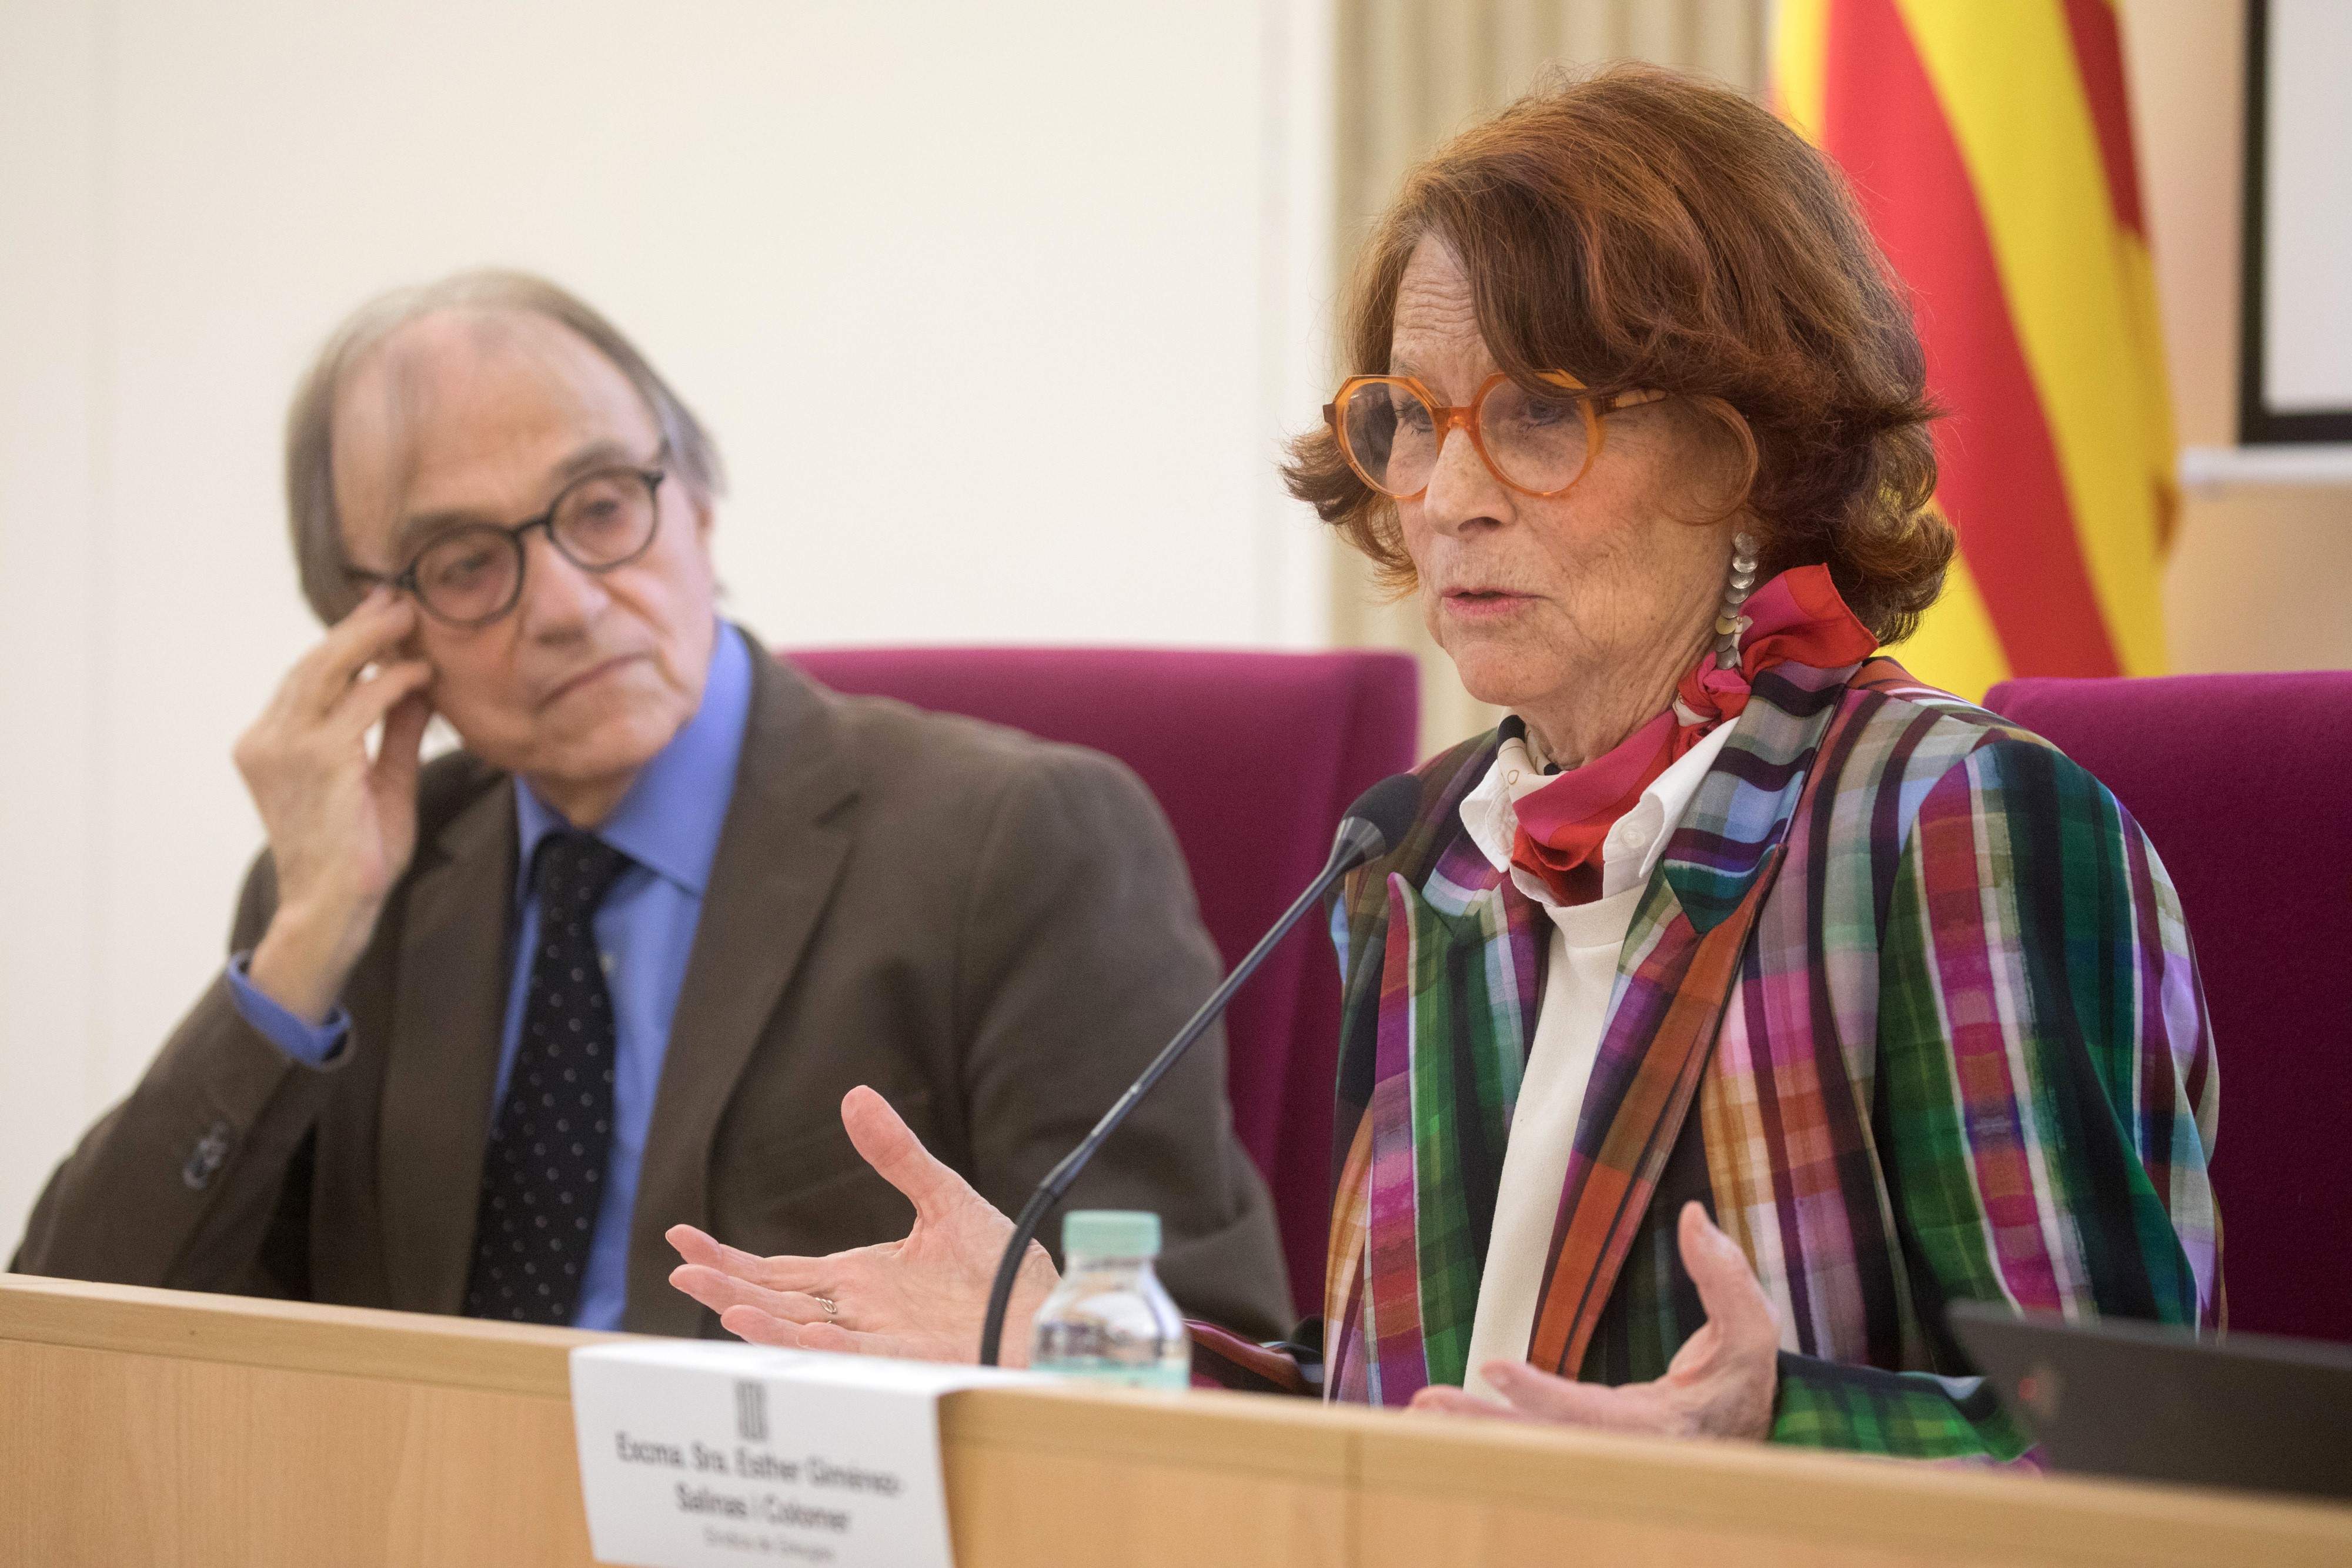 Un magistrat del Suprem i la síndica de greuges: Espanya no és conscient de la manca de formació dels jutges